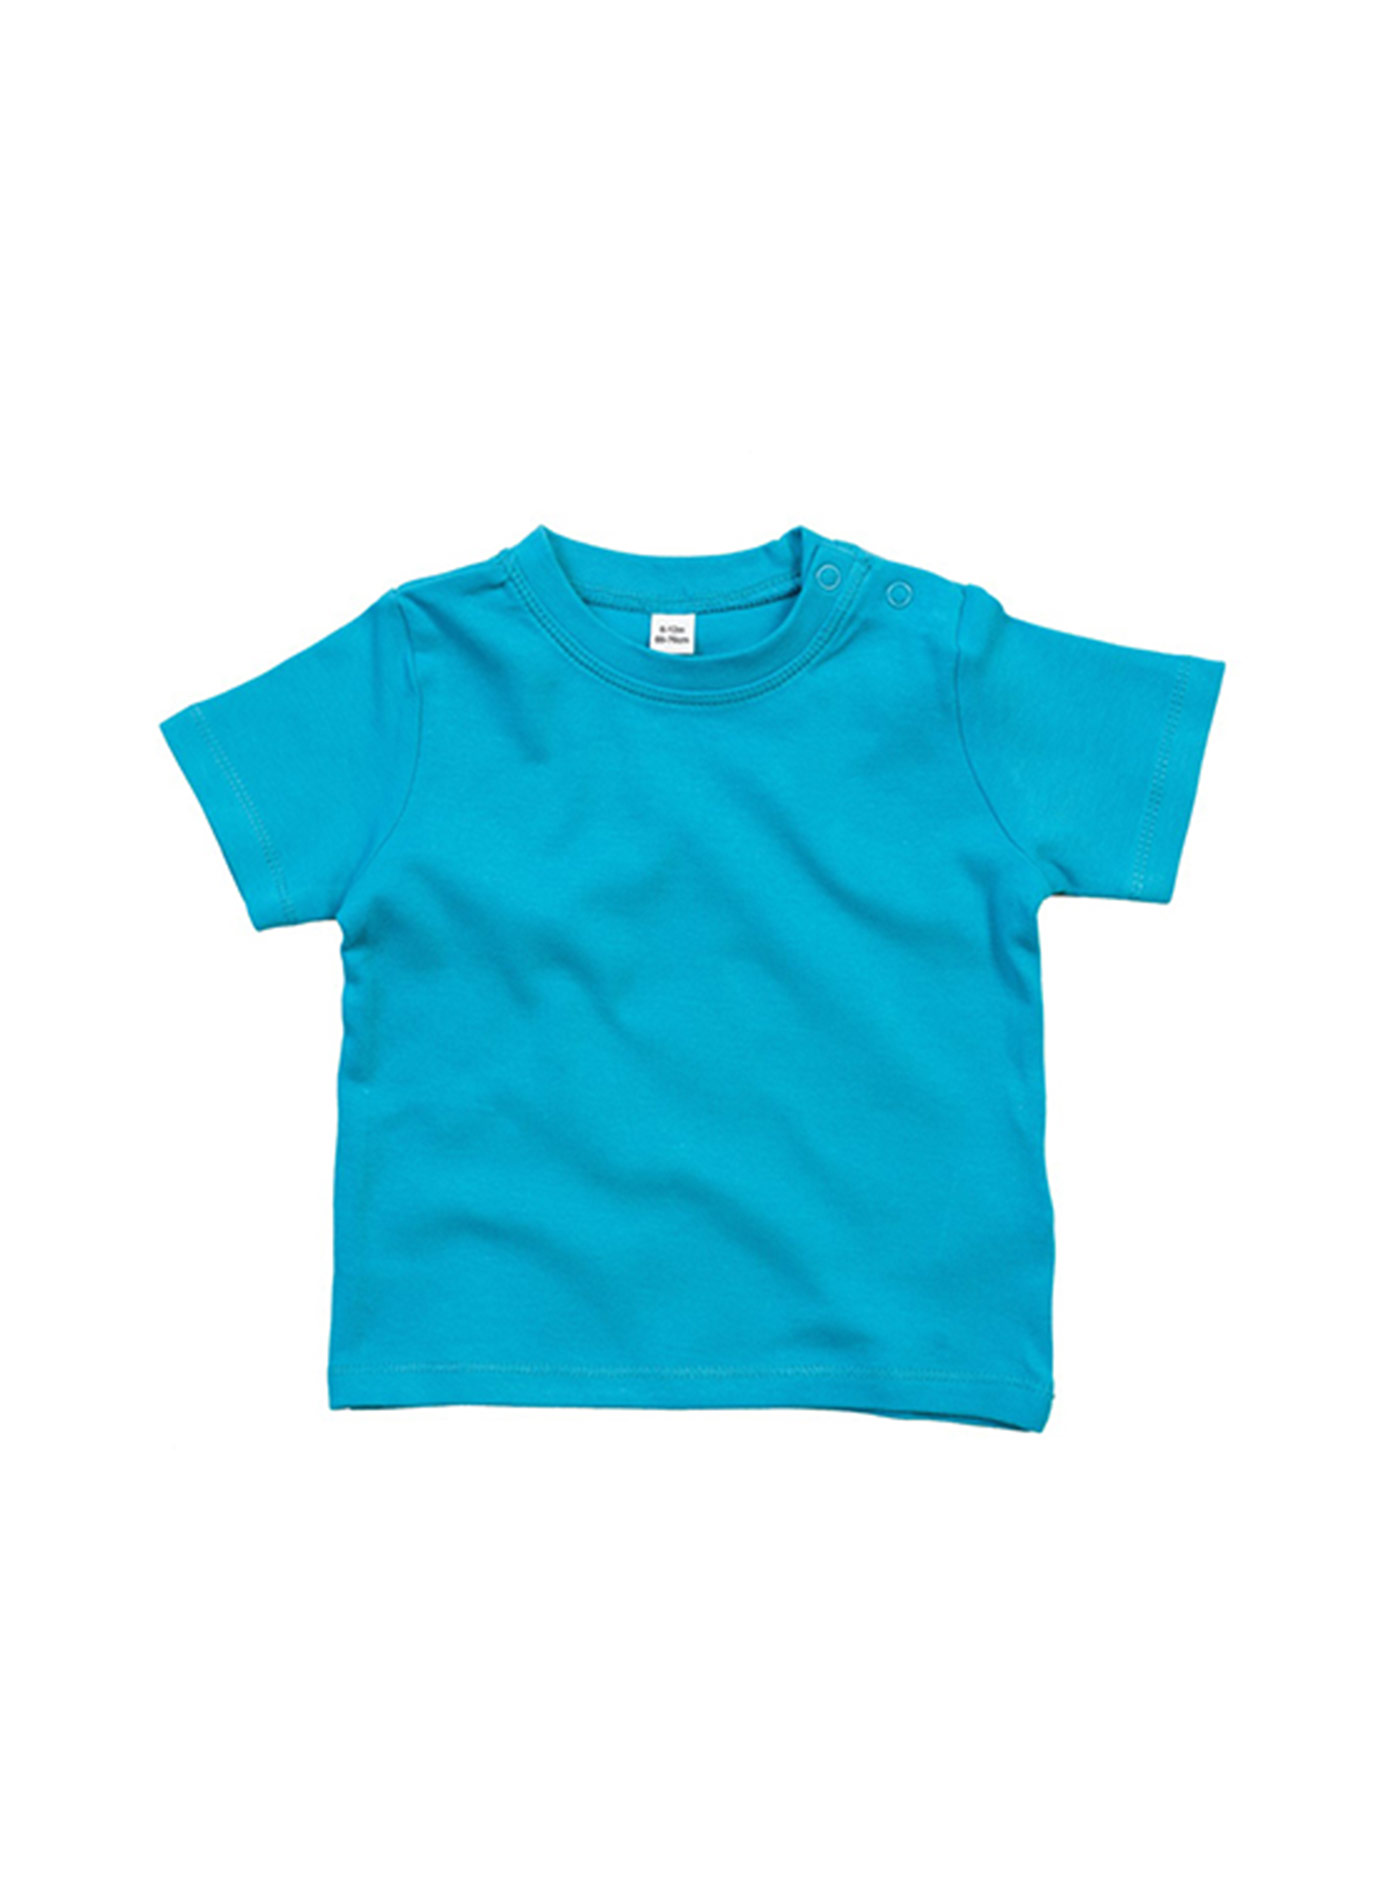 Dětské bavlněné tričko Babybugz - Blankytně modrá 6-12m